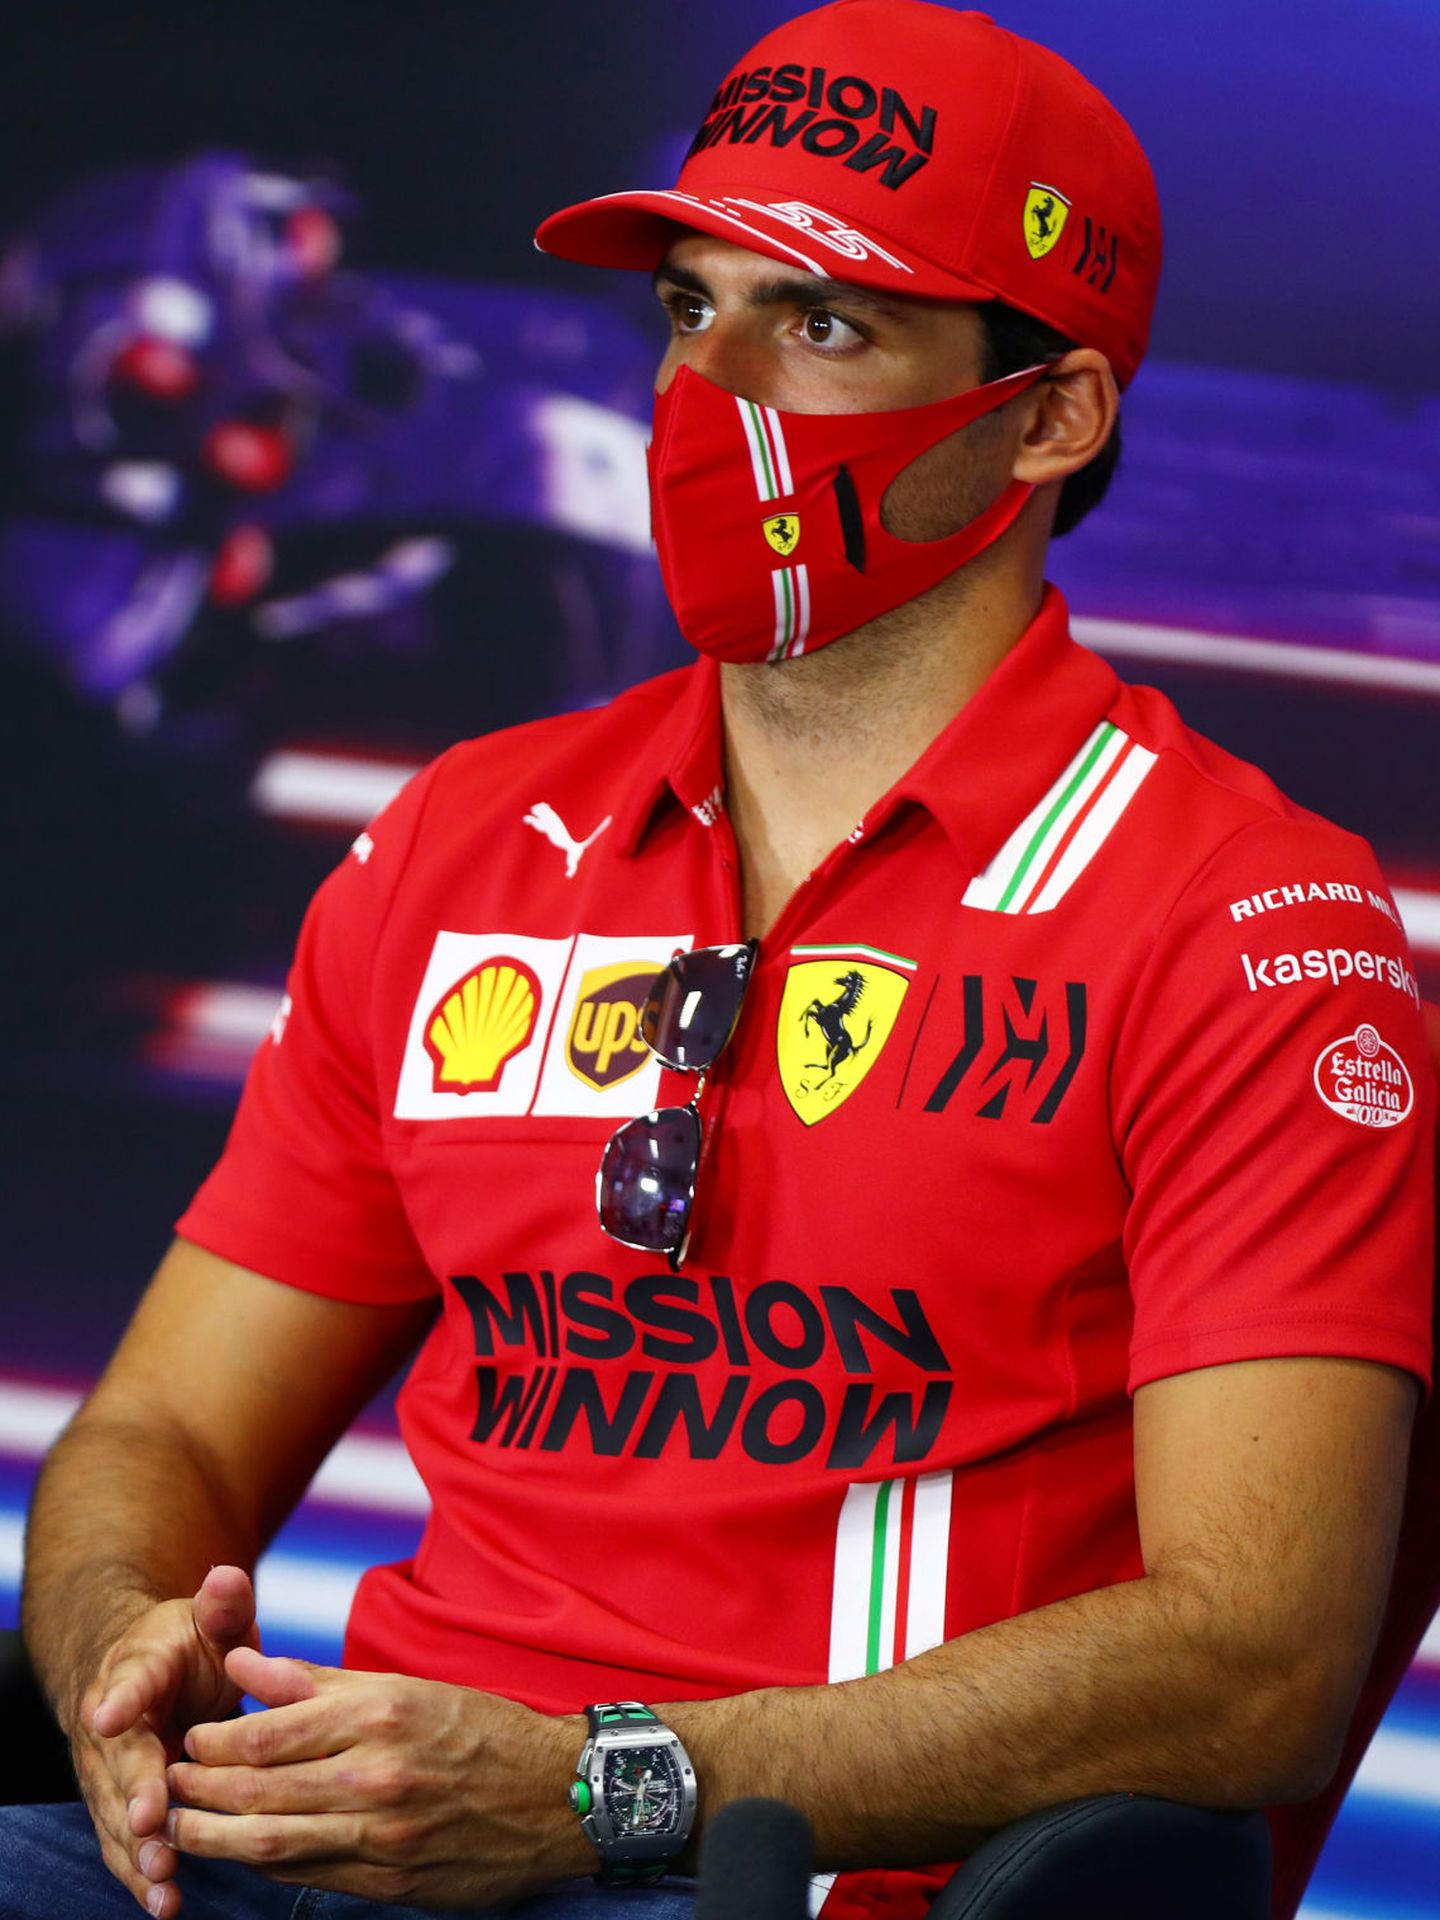 El piloto español durante la rueda de prensa del Gran Premio de Baréin. (Reuters)